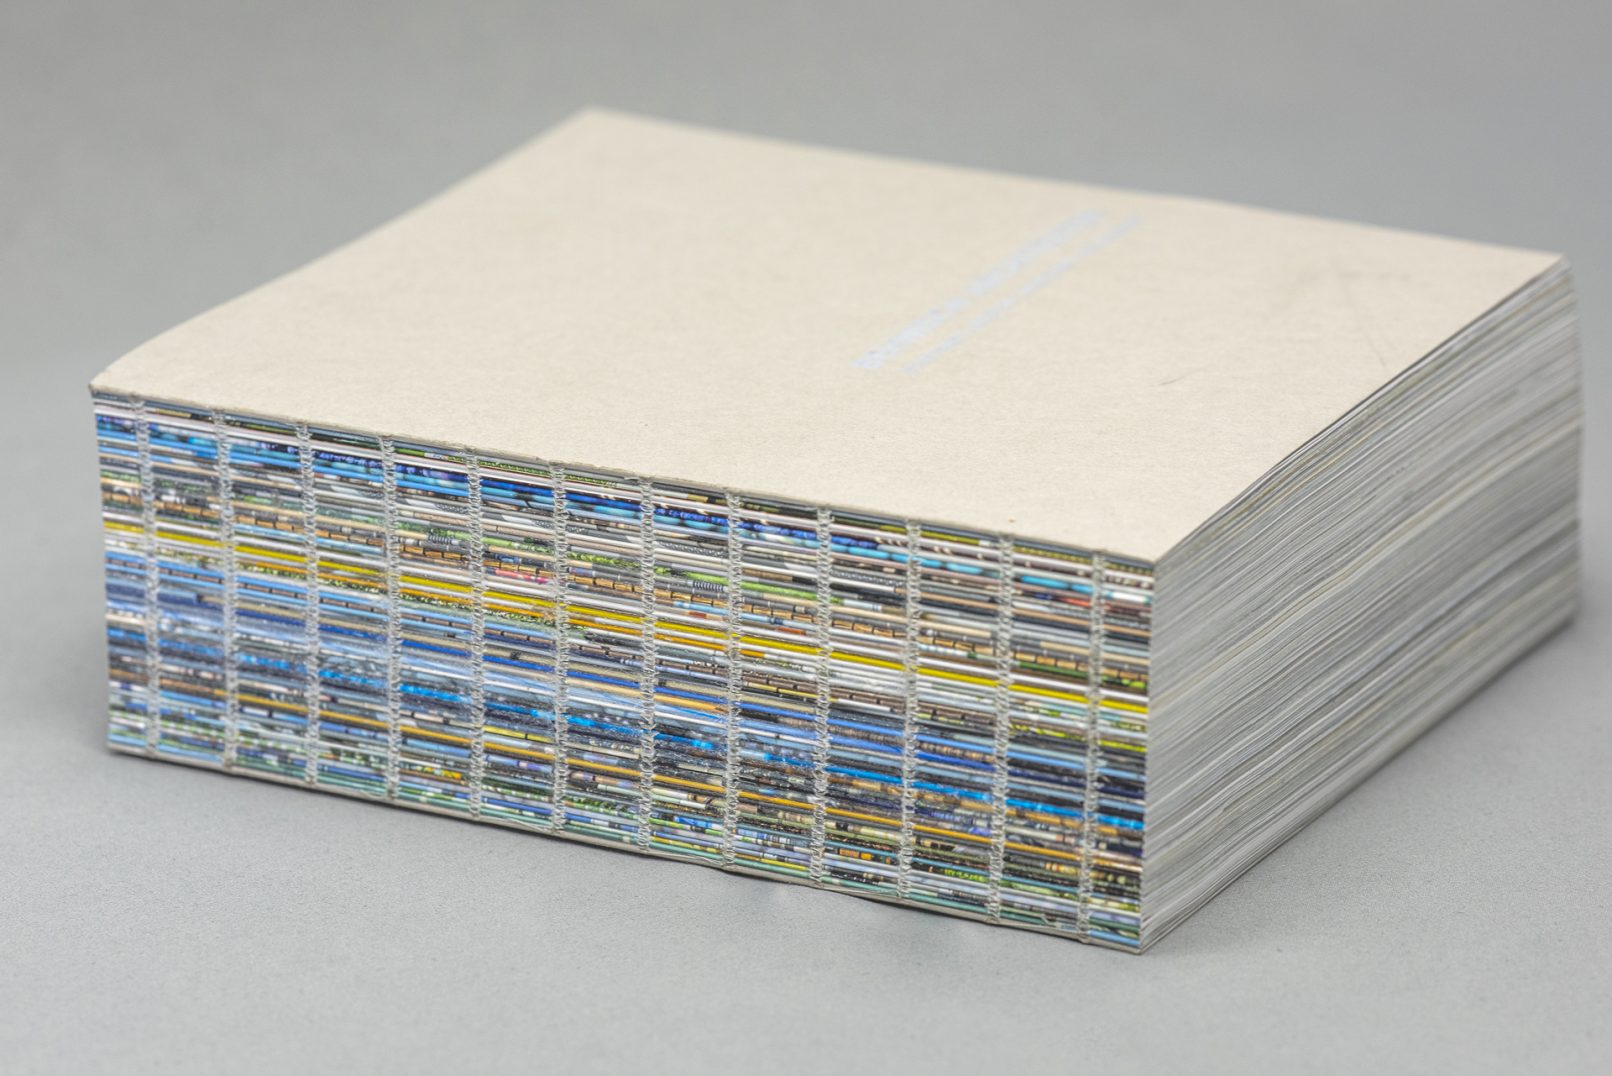 Offener Buchrücken mit sichtbaren Heftfäden der Monografie Behnisch Architekten